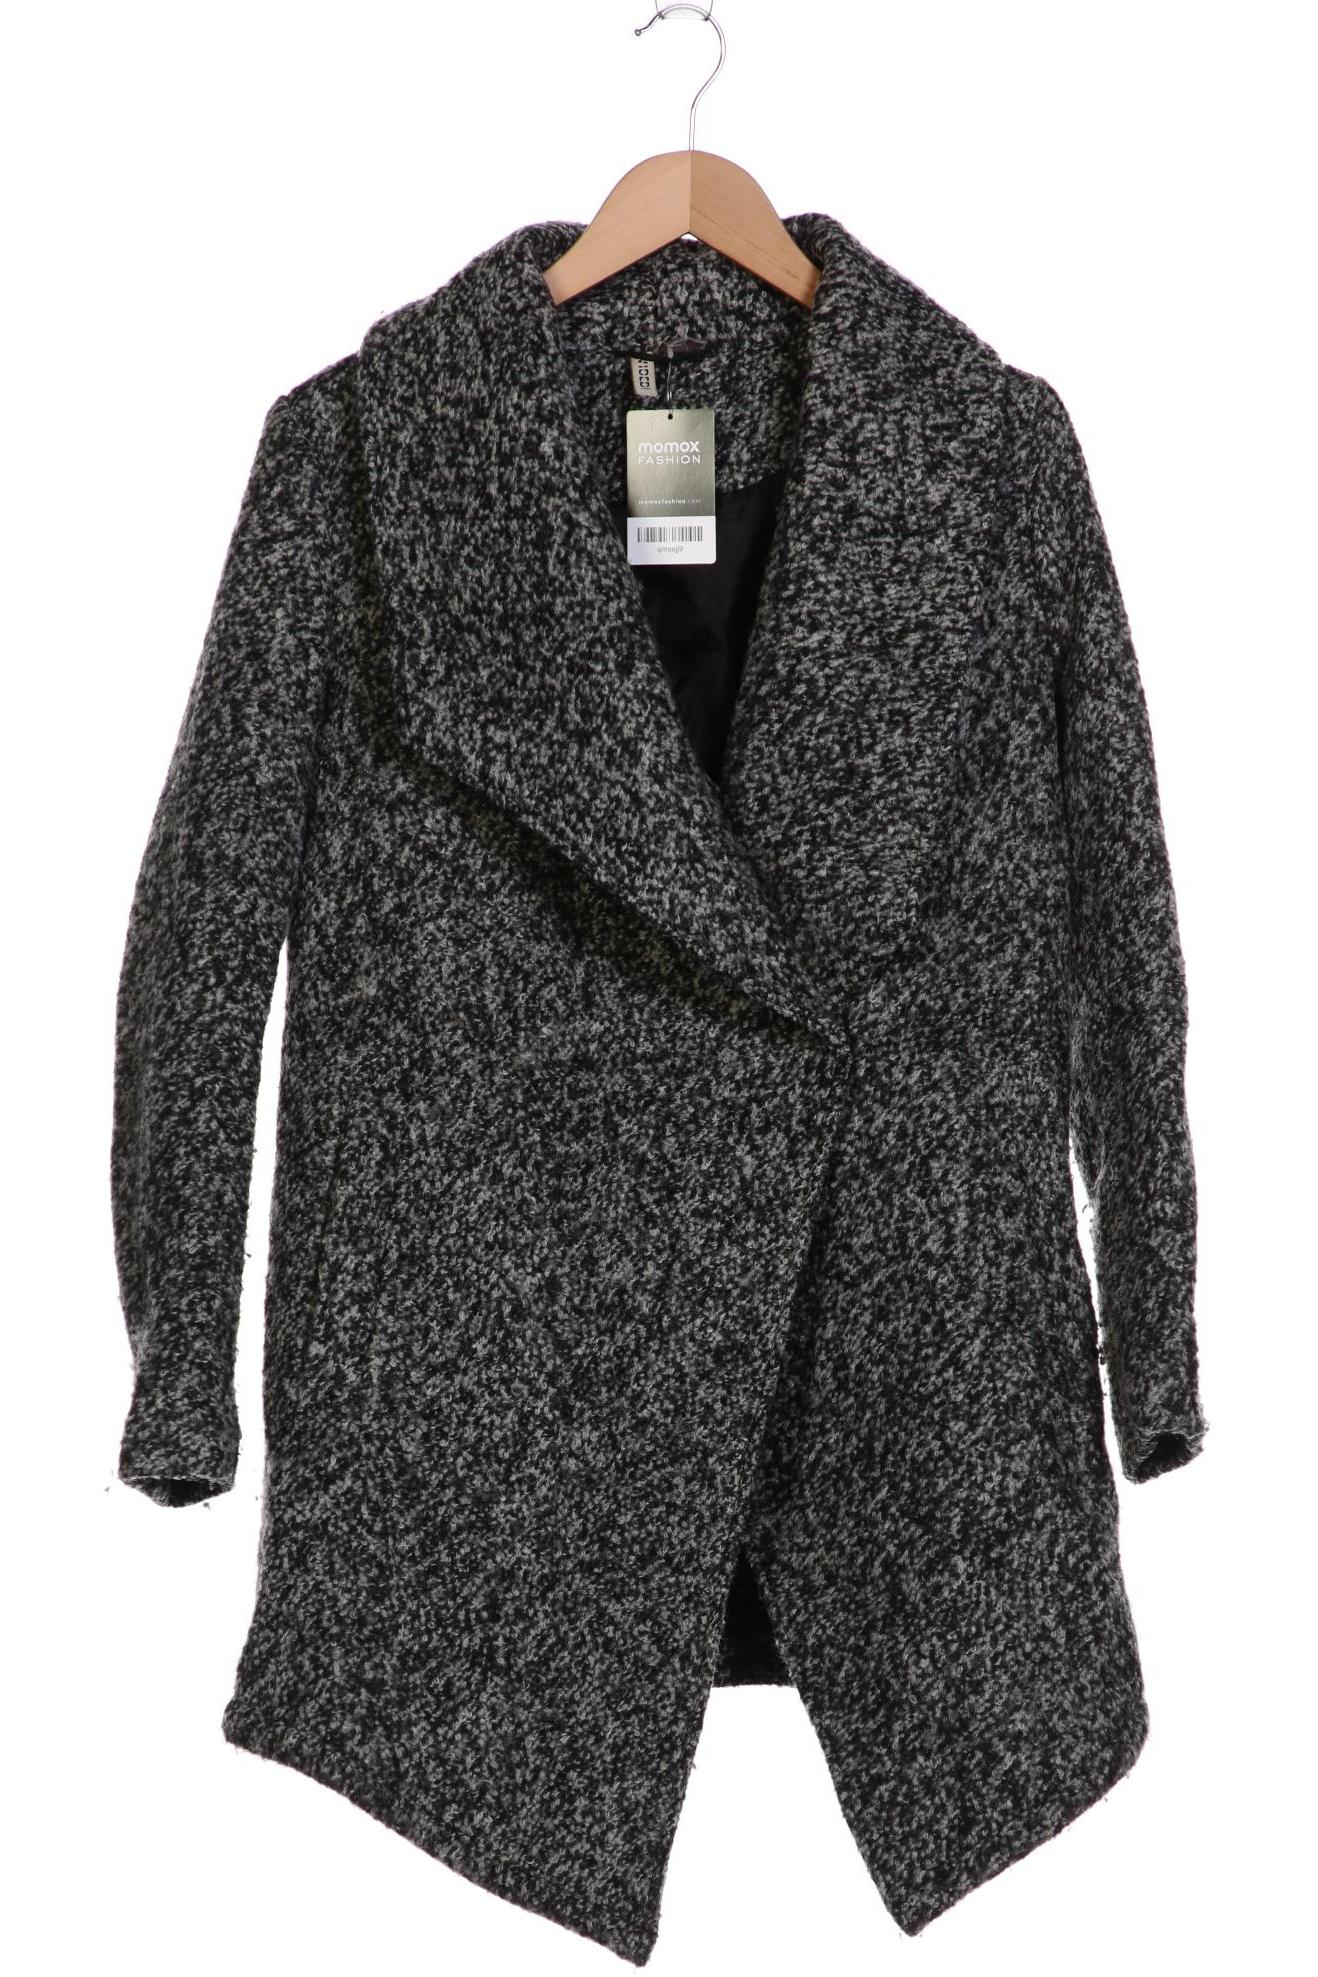 H&M Damen Mantel, schwarz, Gr. 36 von H&M